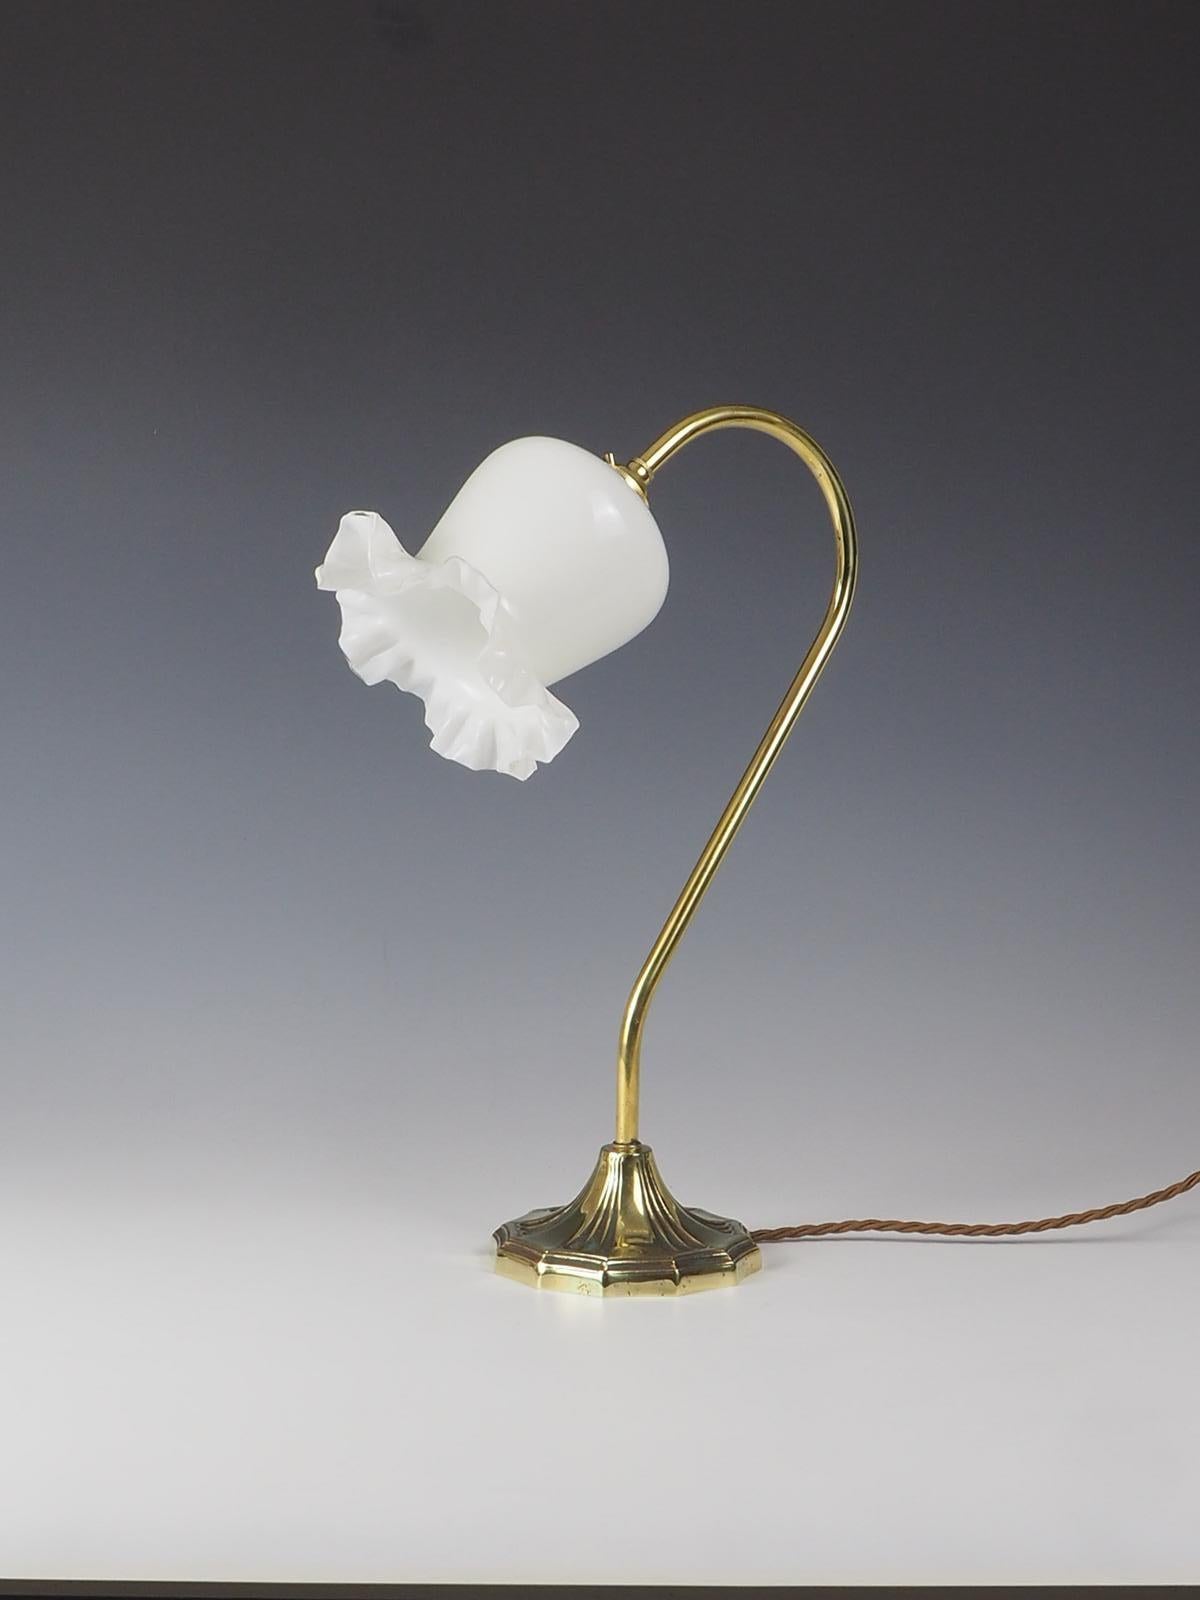 Rehaussez votre espace avec le charme exquis de notre Elegant Art Nouveau Swan Neck Table Lamp with Shade. Cette lampe étonnante allie sans effort la beauté de l'Art nouveau à une fonctionnalité pratique. Dotée d'un élégant col de cygne en laiton